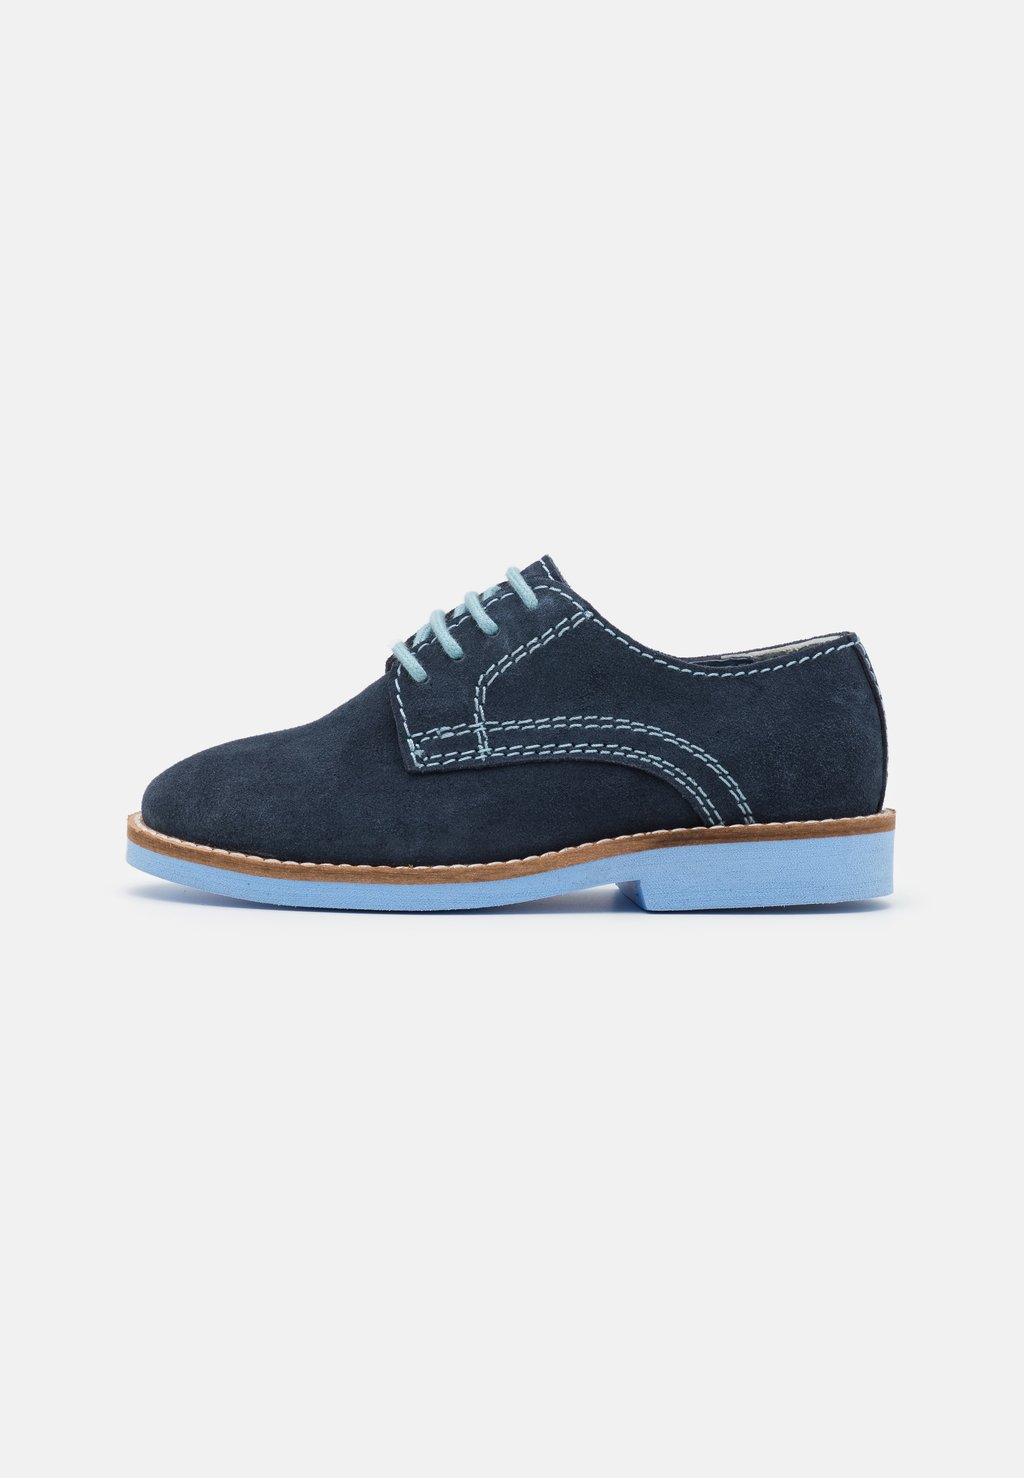 Спортивные туфли на шнуровке LEATHER Friboo, цвет dark blue спортивные туфли на шнуровке upolu kazar цвет dark blue